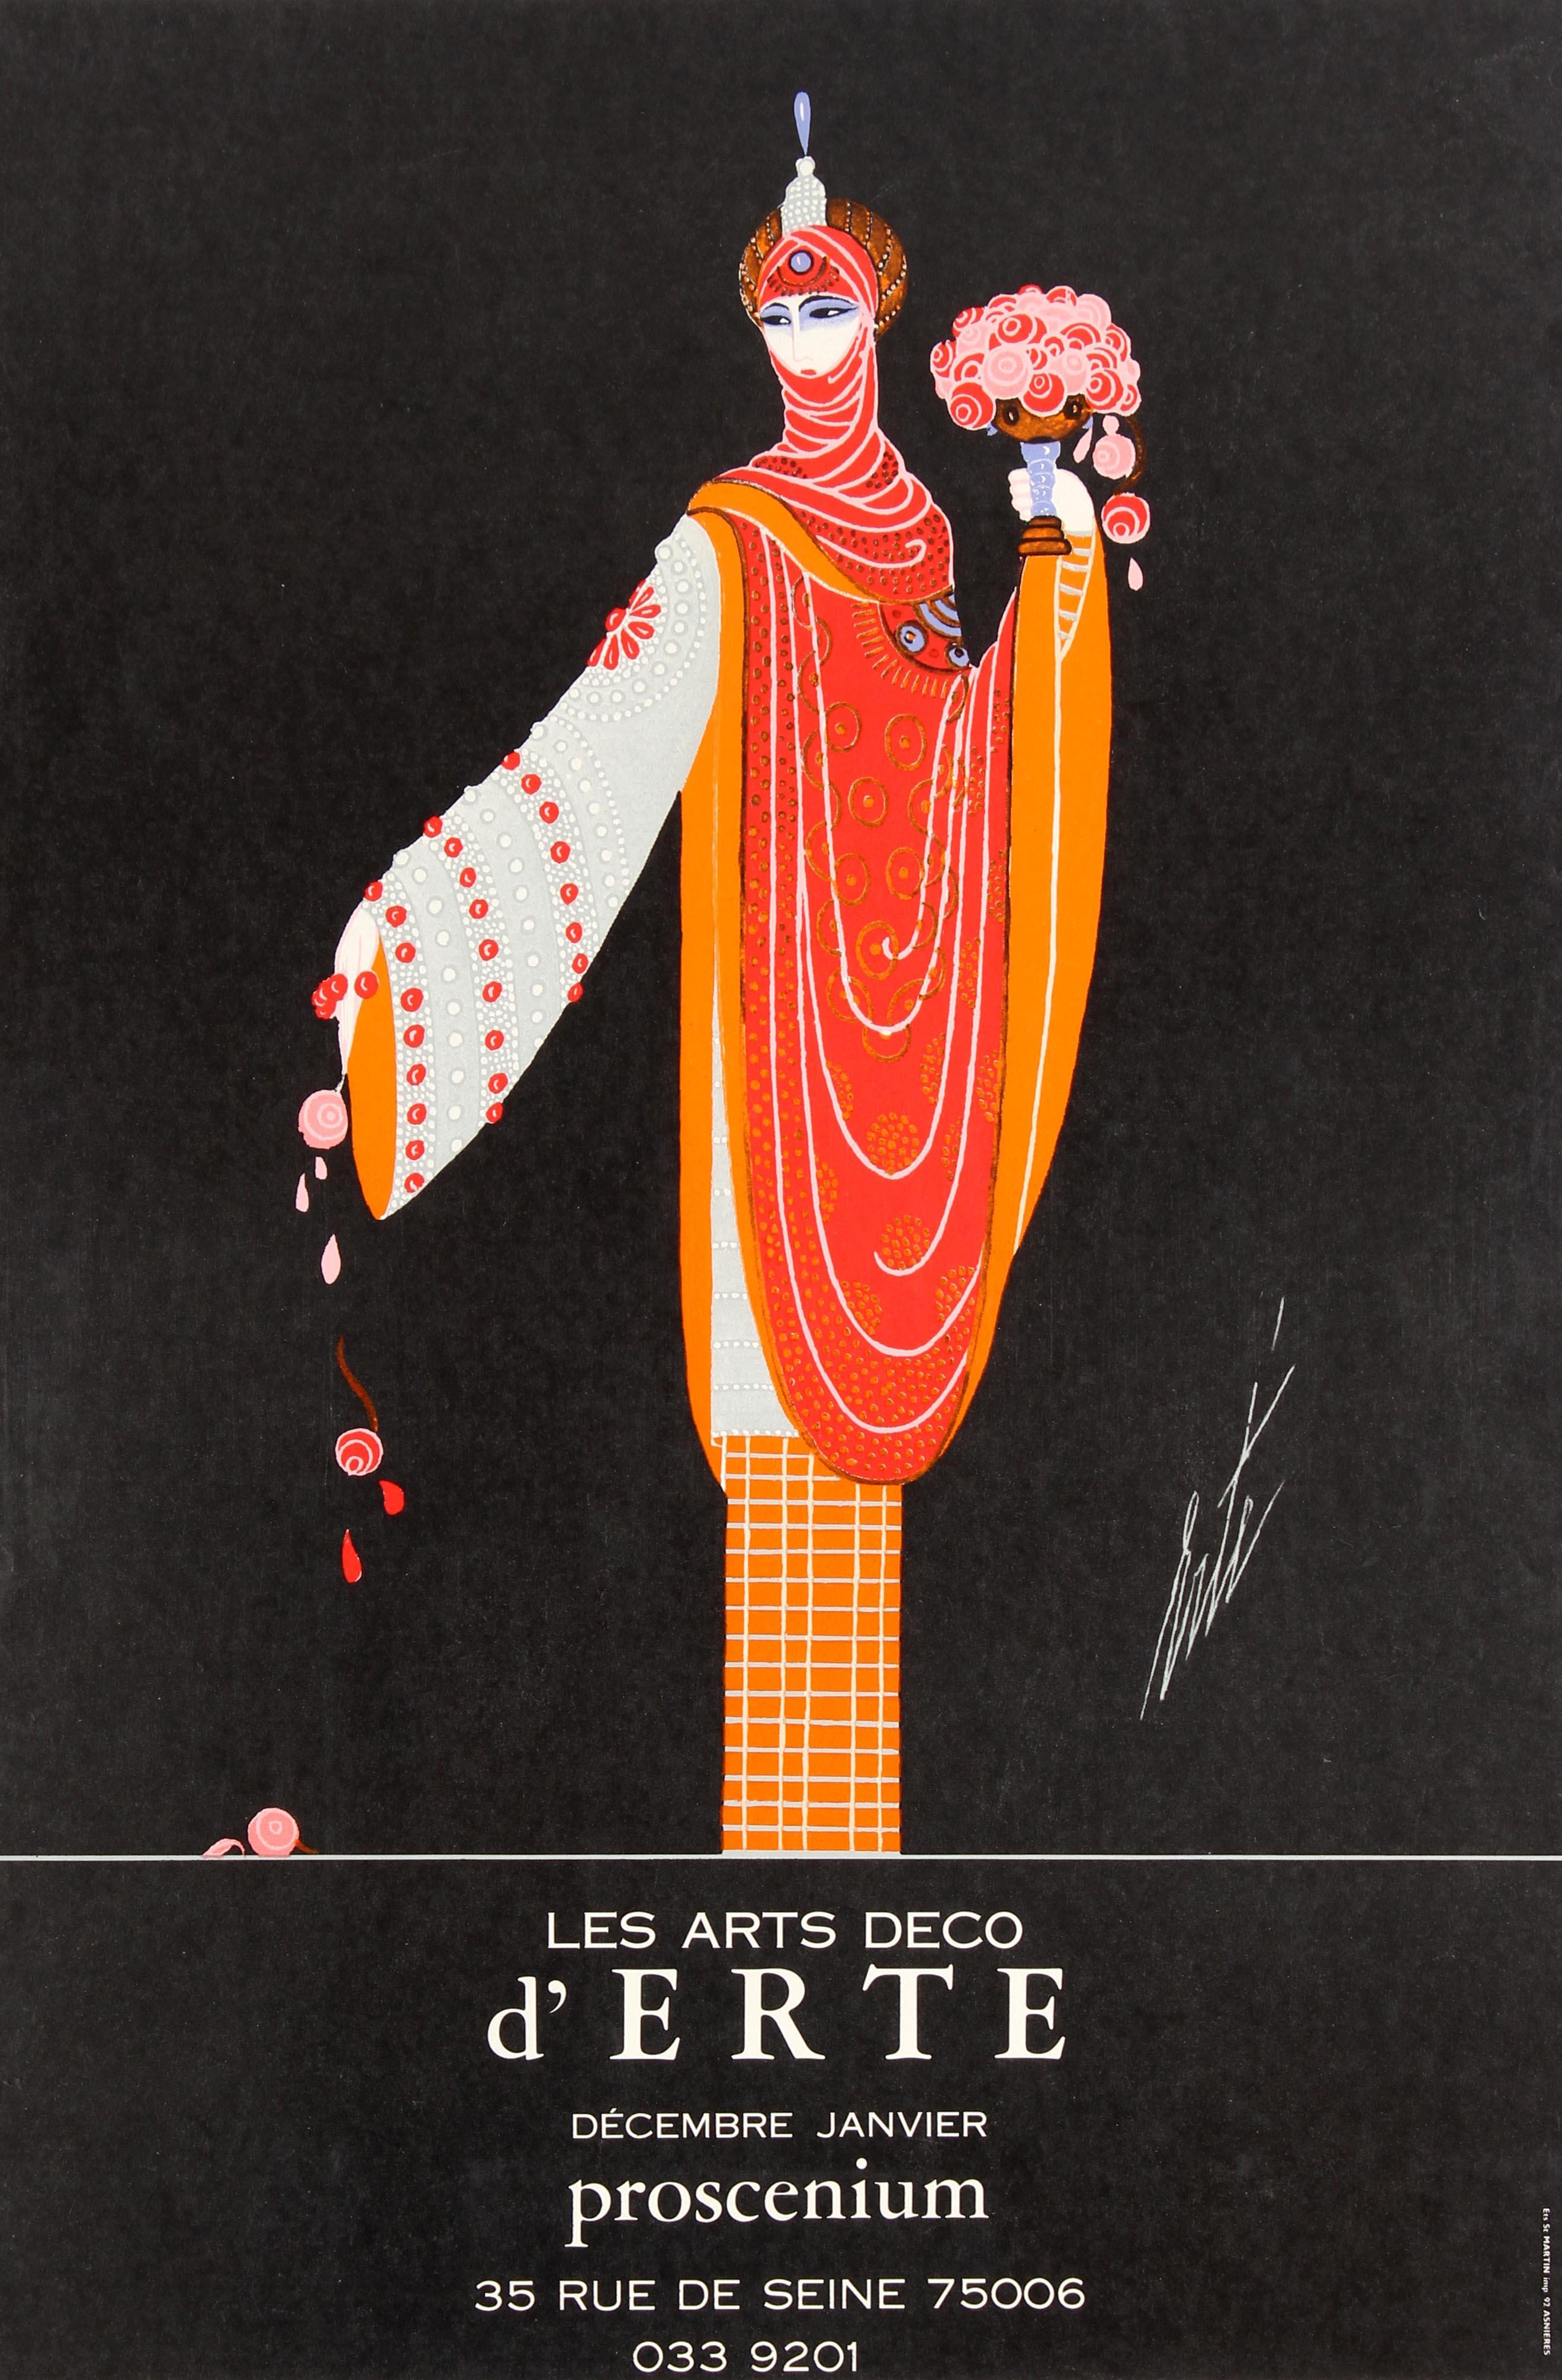 Erté Print - Original Vintage Decorative Art Deco Style Poster For Erte Exhibition Proscenium